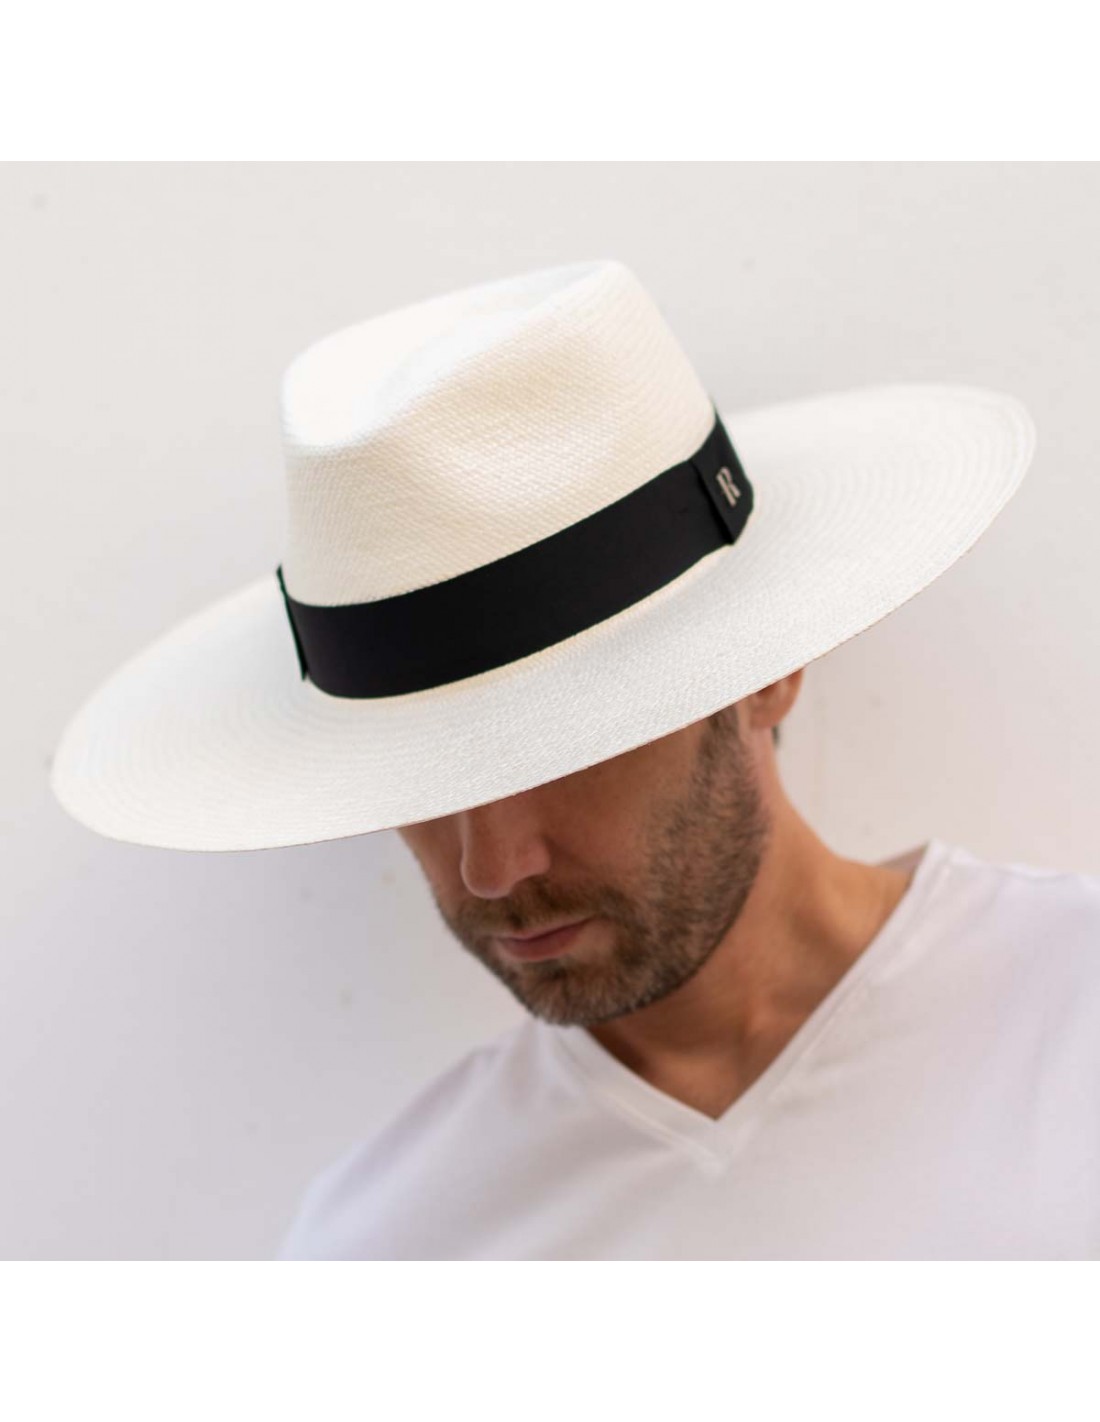 10 styles de chapeaux à connaître  Chapeau homme été, Modèle de chapeau,  Styles de chapeaux